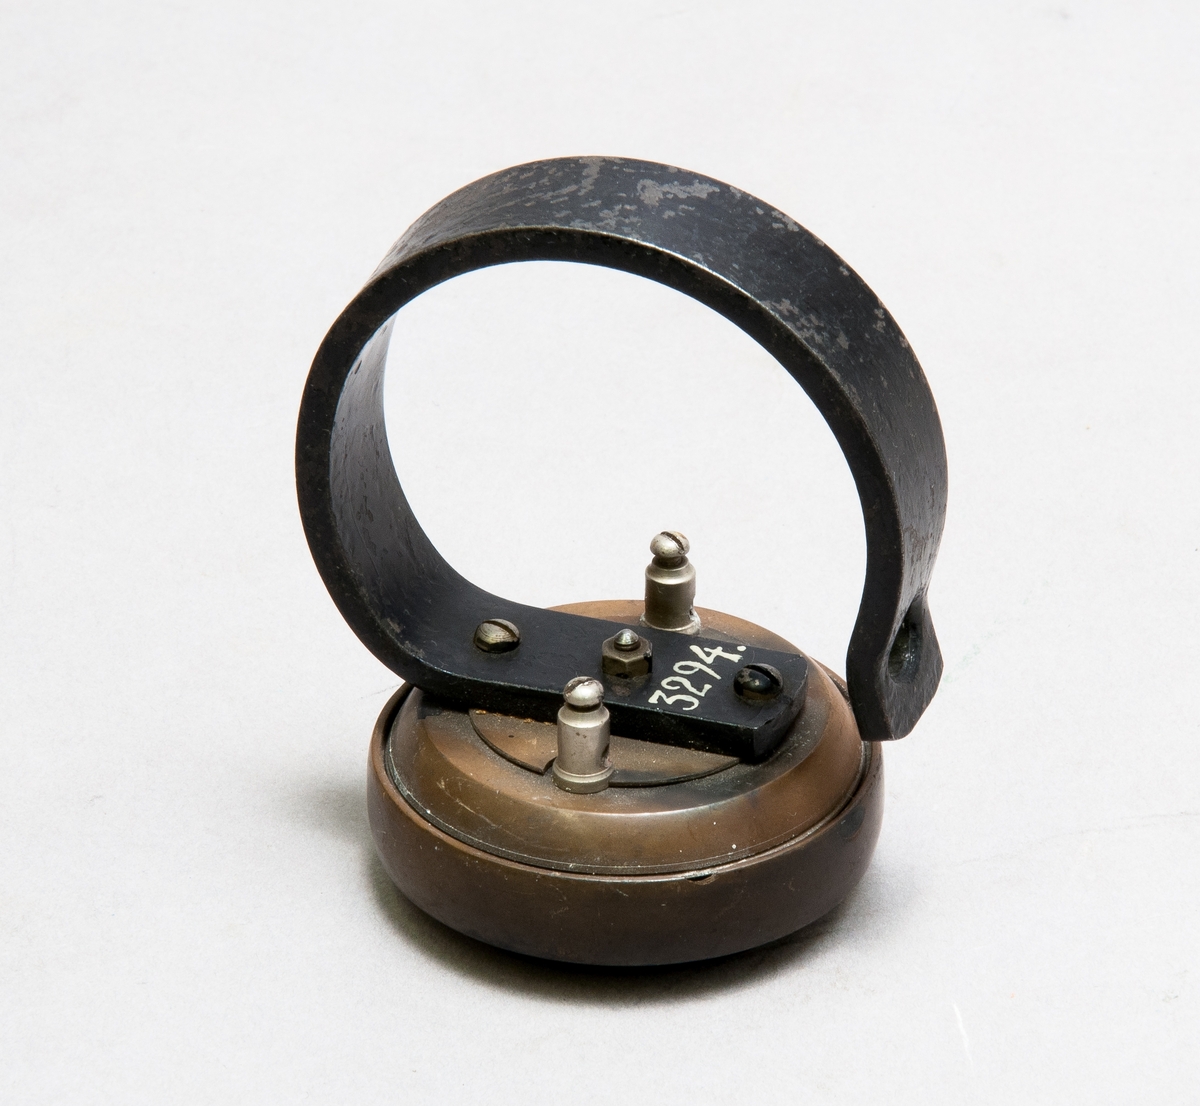 Enkelpolig hörtelefon med permanenta magneten omböjd som handtag.
Även märkt 3294